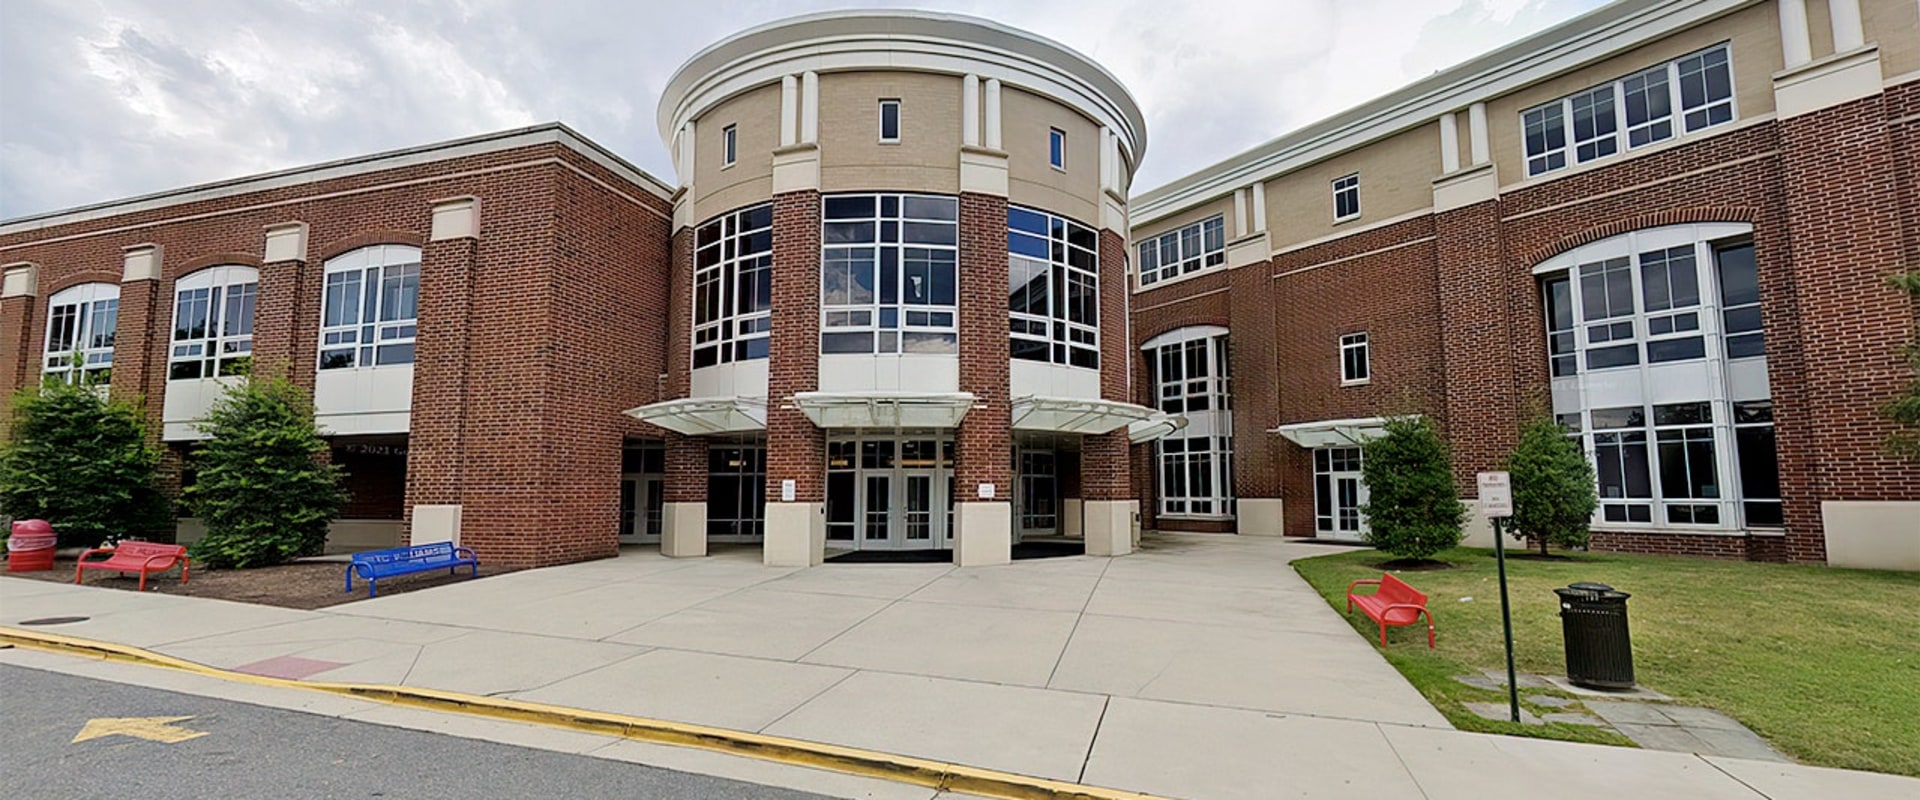 Are Alexandria VA Public Schools Good? A Comprehensive Look